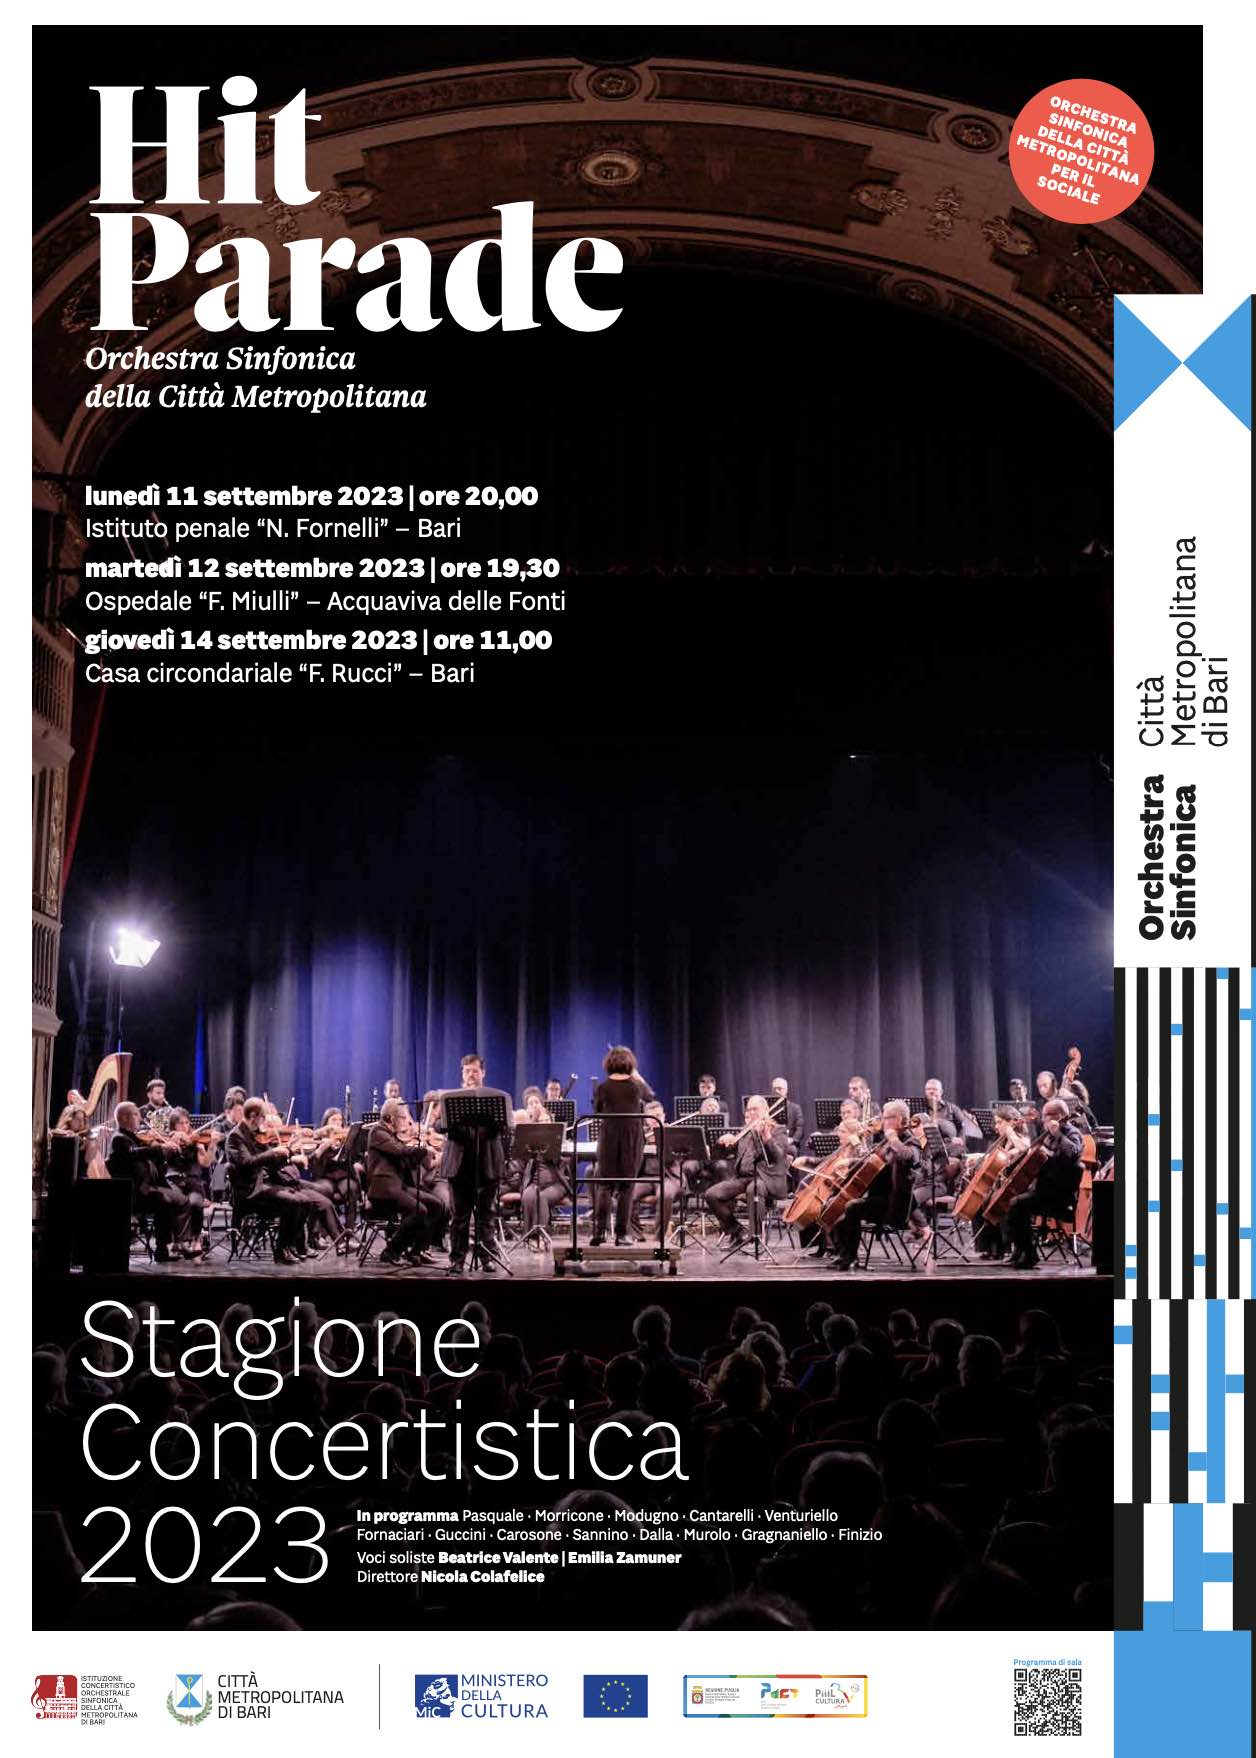 L’Orchestra sinfonica della Città metropolitana di Bari per il sociale: musica nelle carceri e negli ospedali